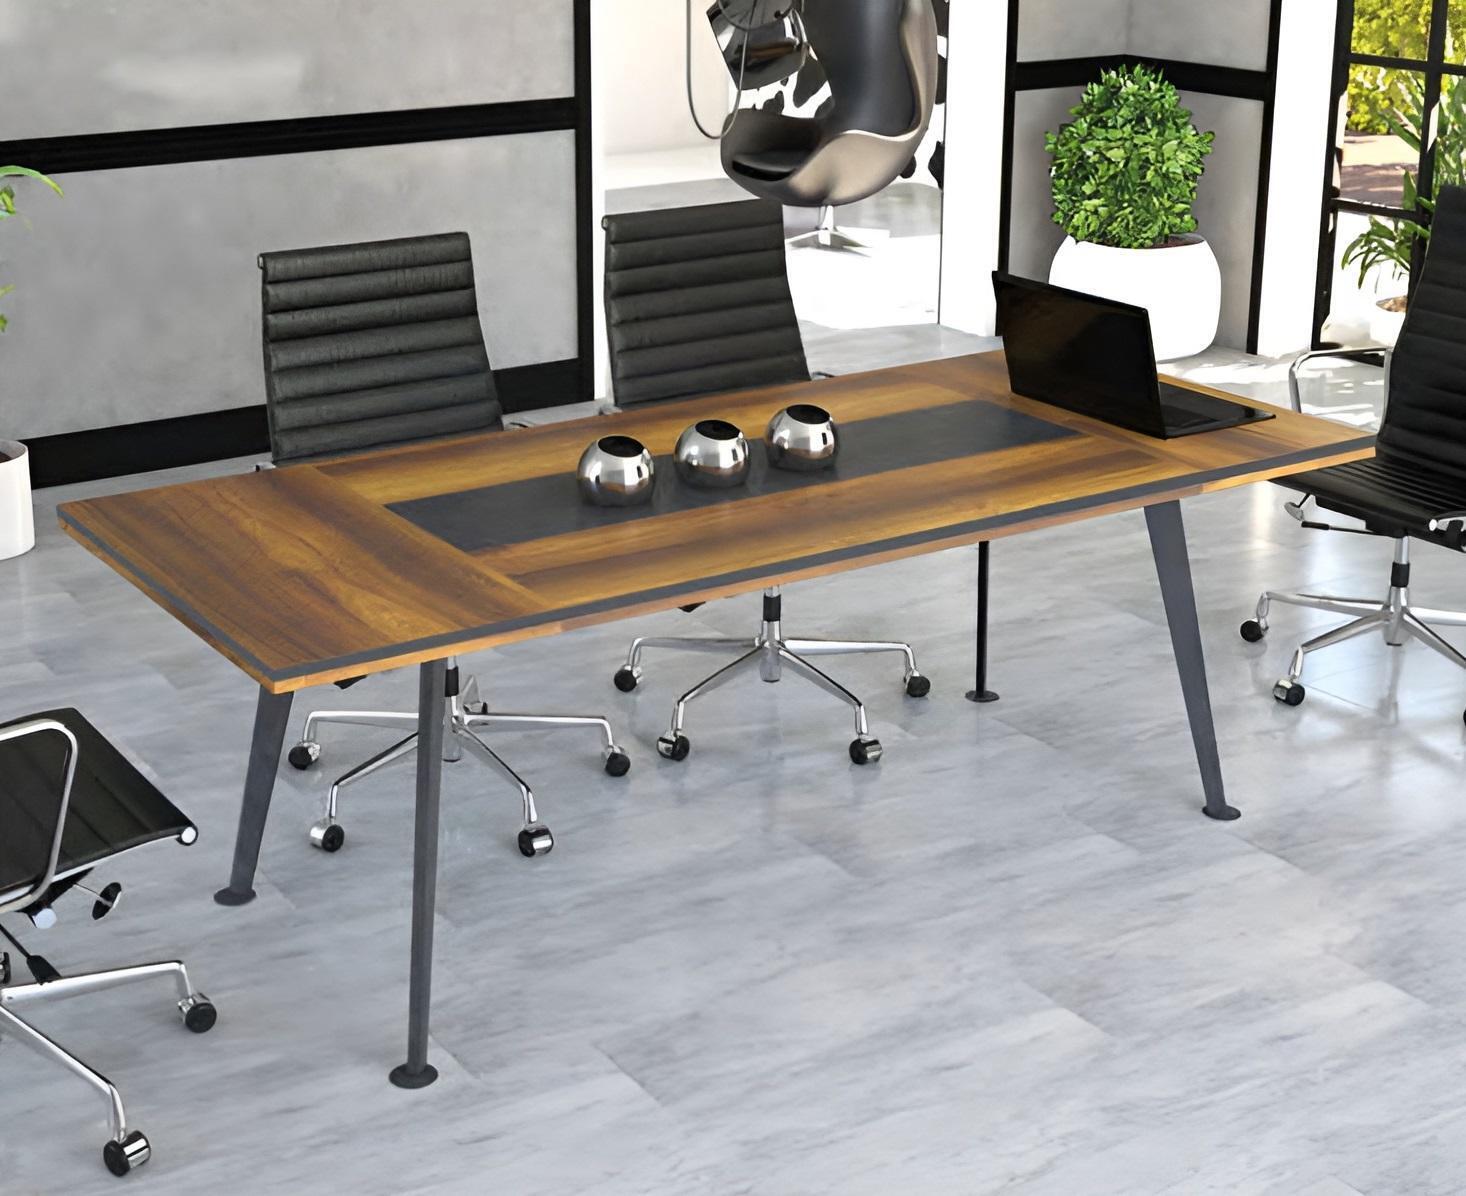 Groß Tisch Konferenztisch Besprechungstische Konferenzmöbel Braun Holz